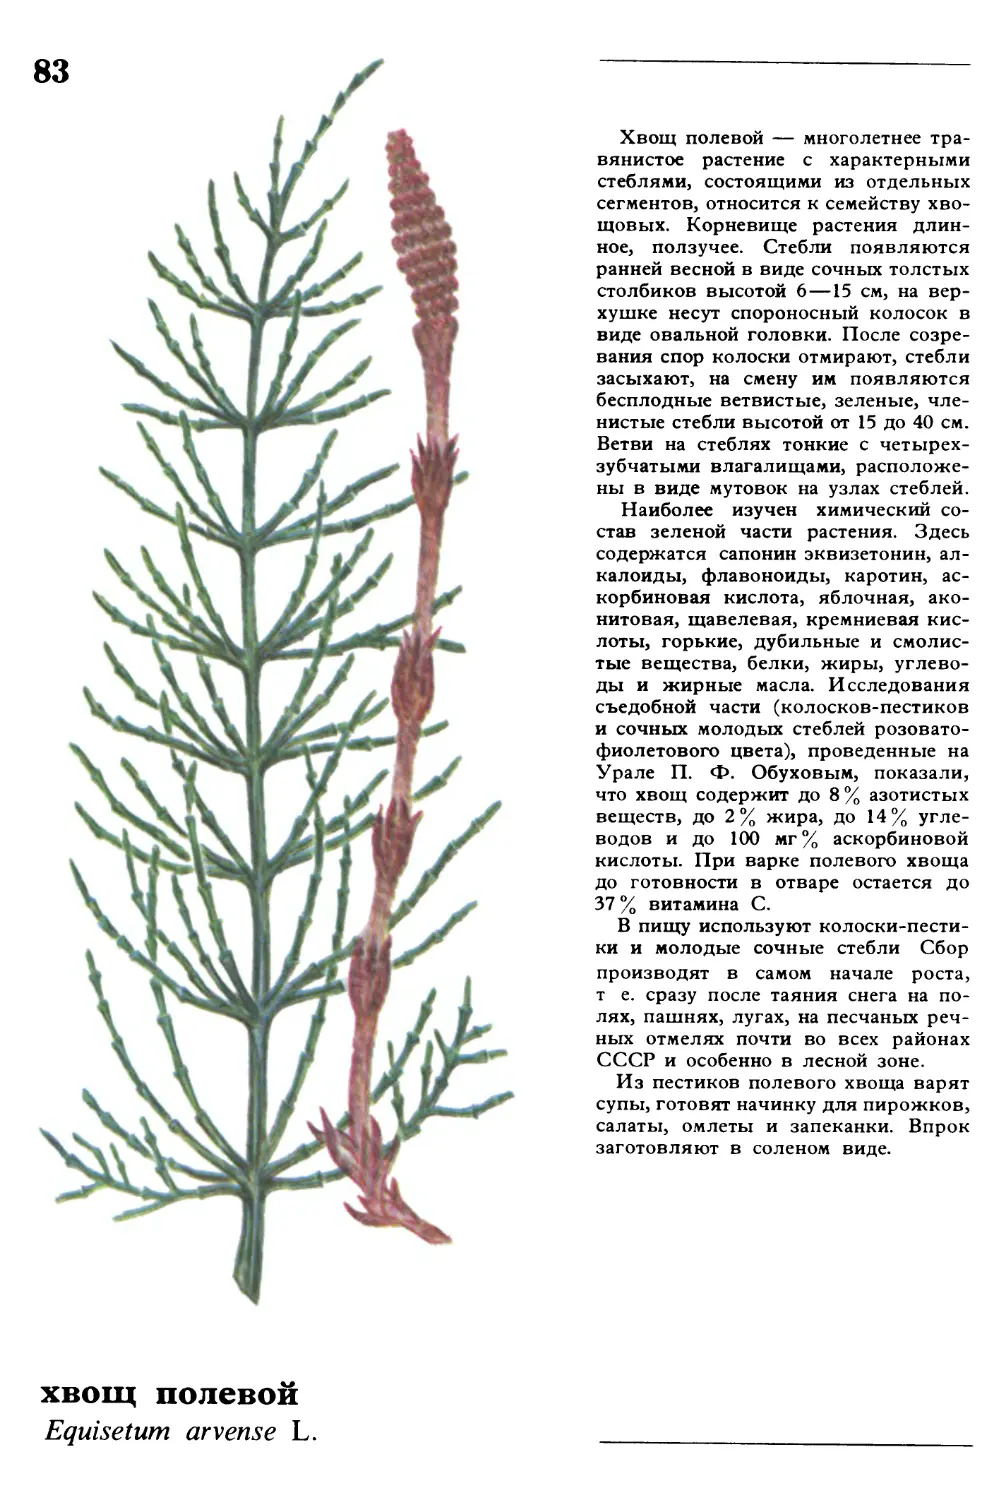 Хвощ полевой
хвощ полевой
Equisetum arvense L.